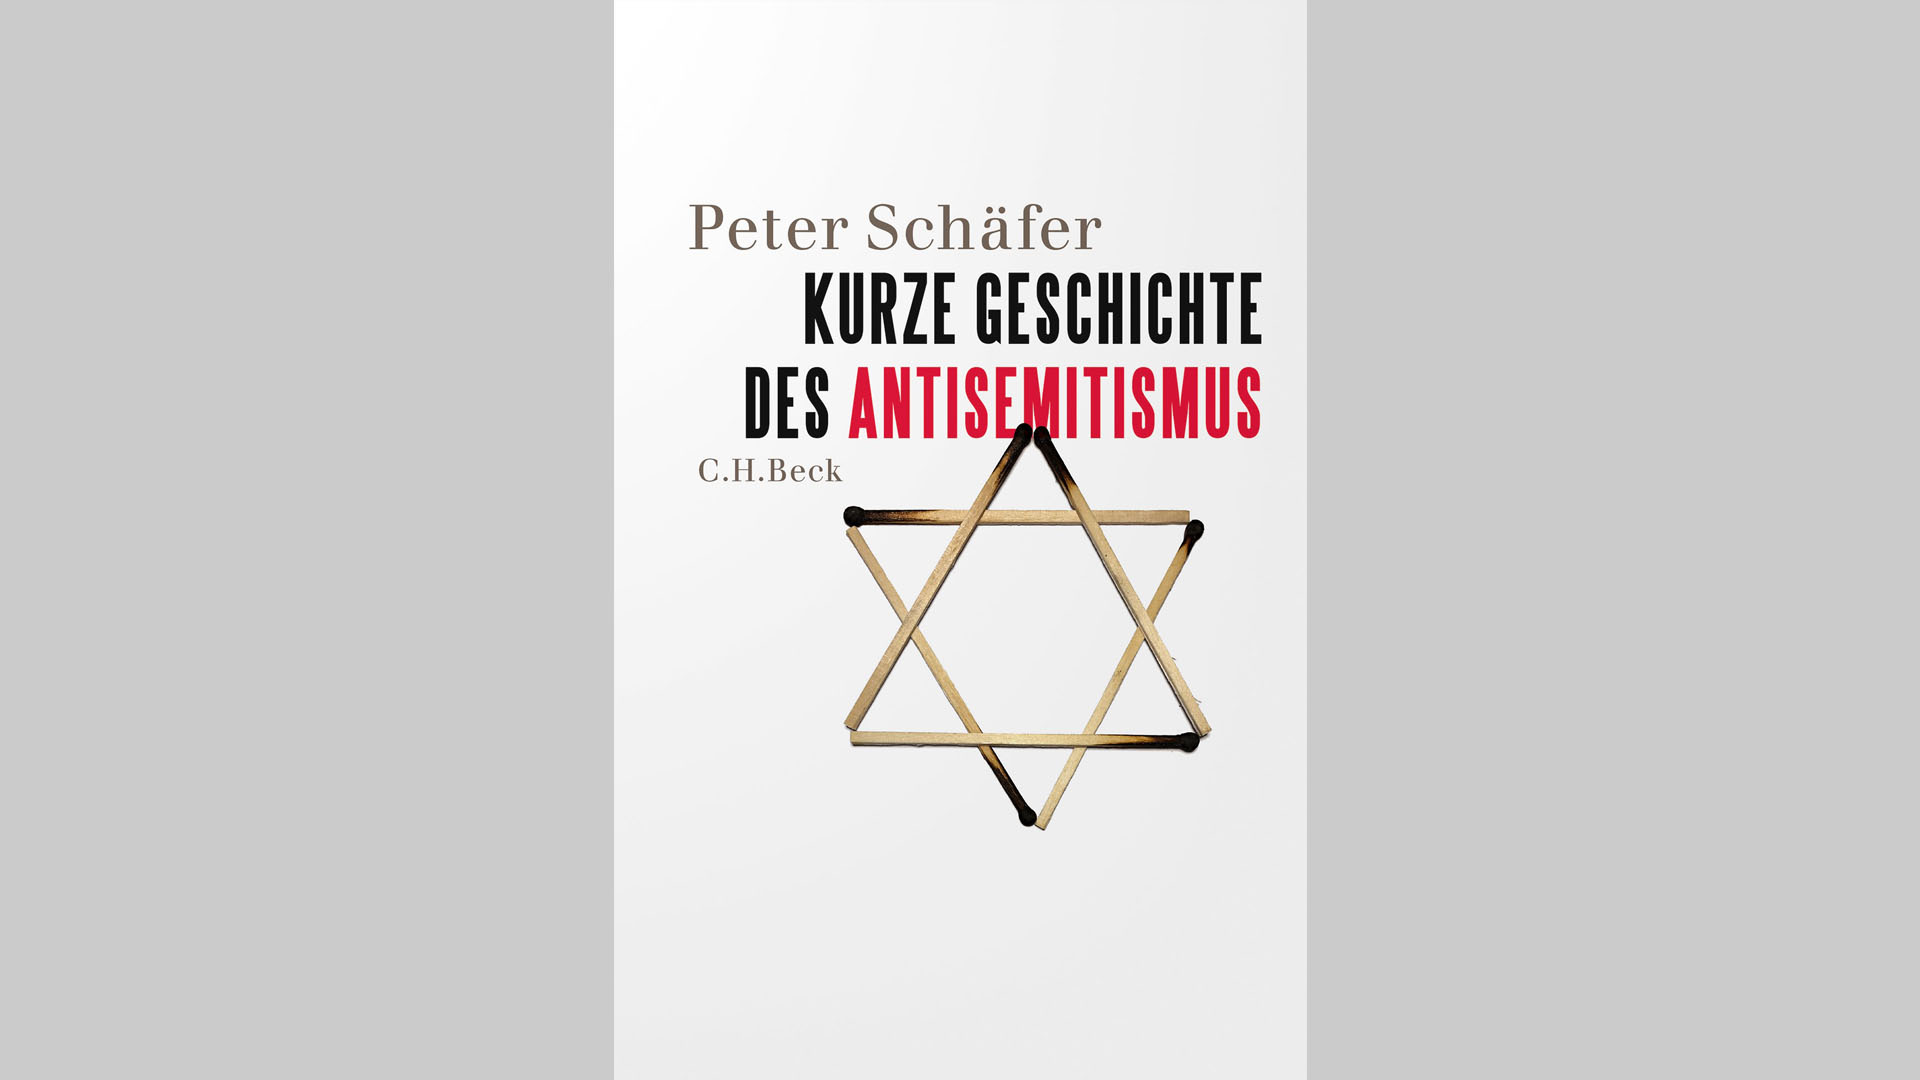 Peter Schäfer: „Kurze Geschichte des Antisemitismus“, C. H. Beck, 335 Seiten, 26,95 Euro, ISBN: 978-3-406-75578-1.